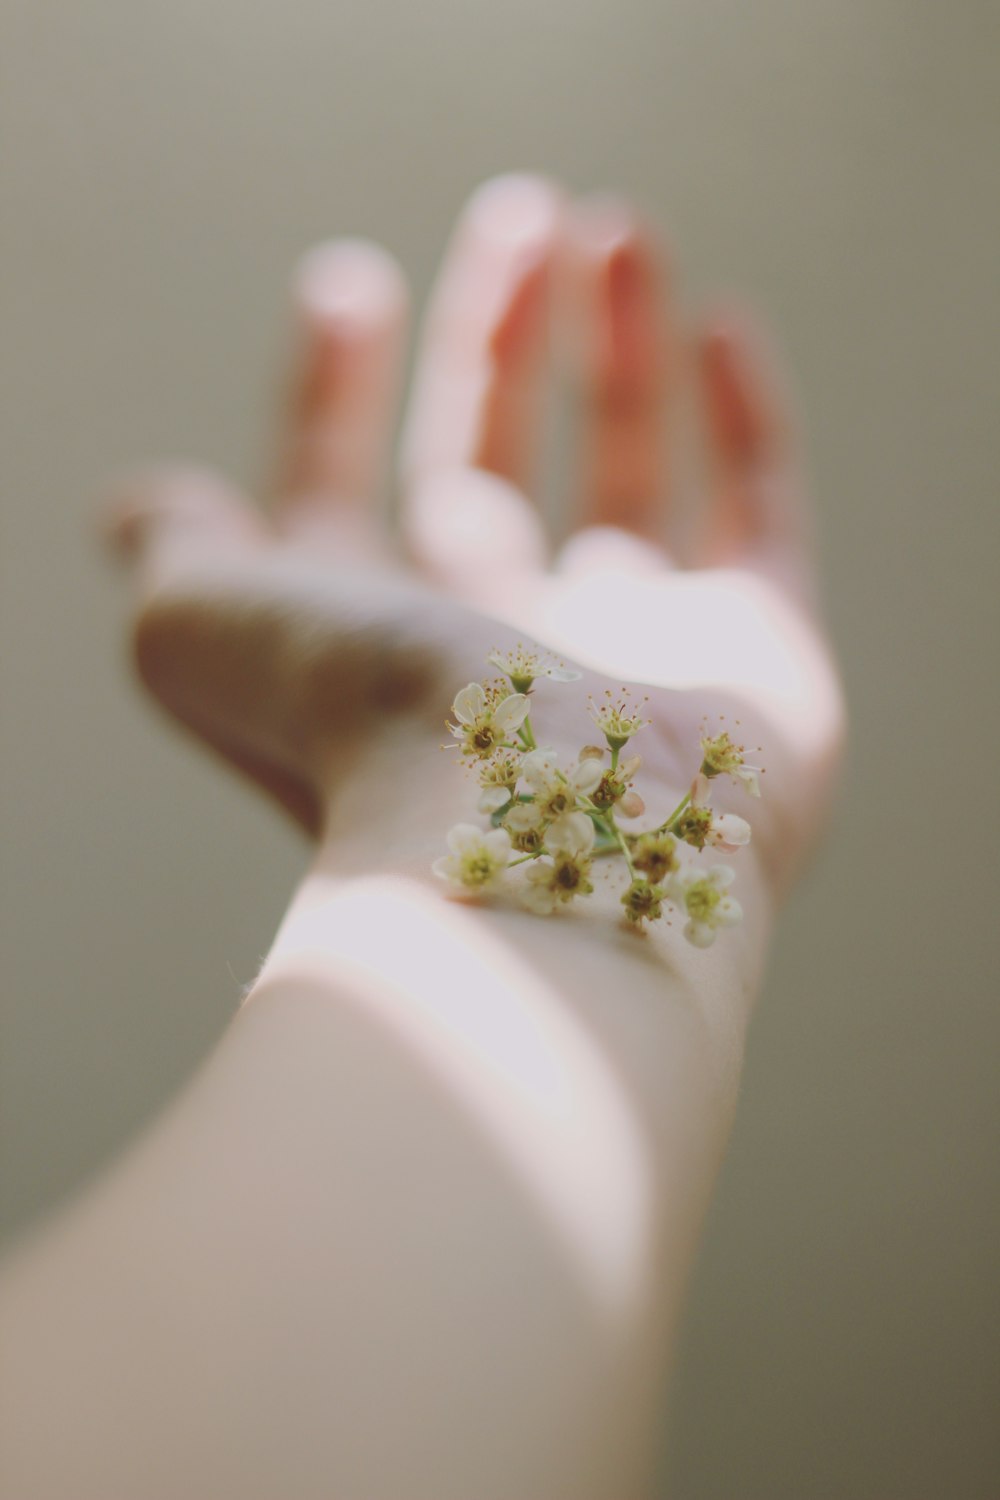 人間の左手に白い群生花のセレクティブフォーカス写真